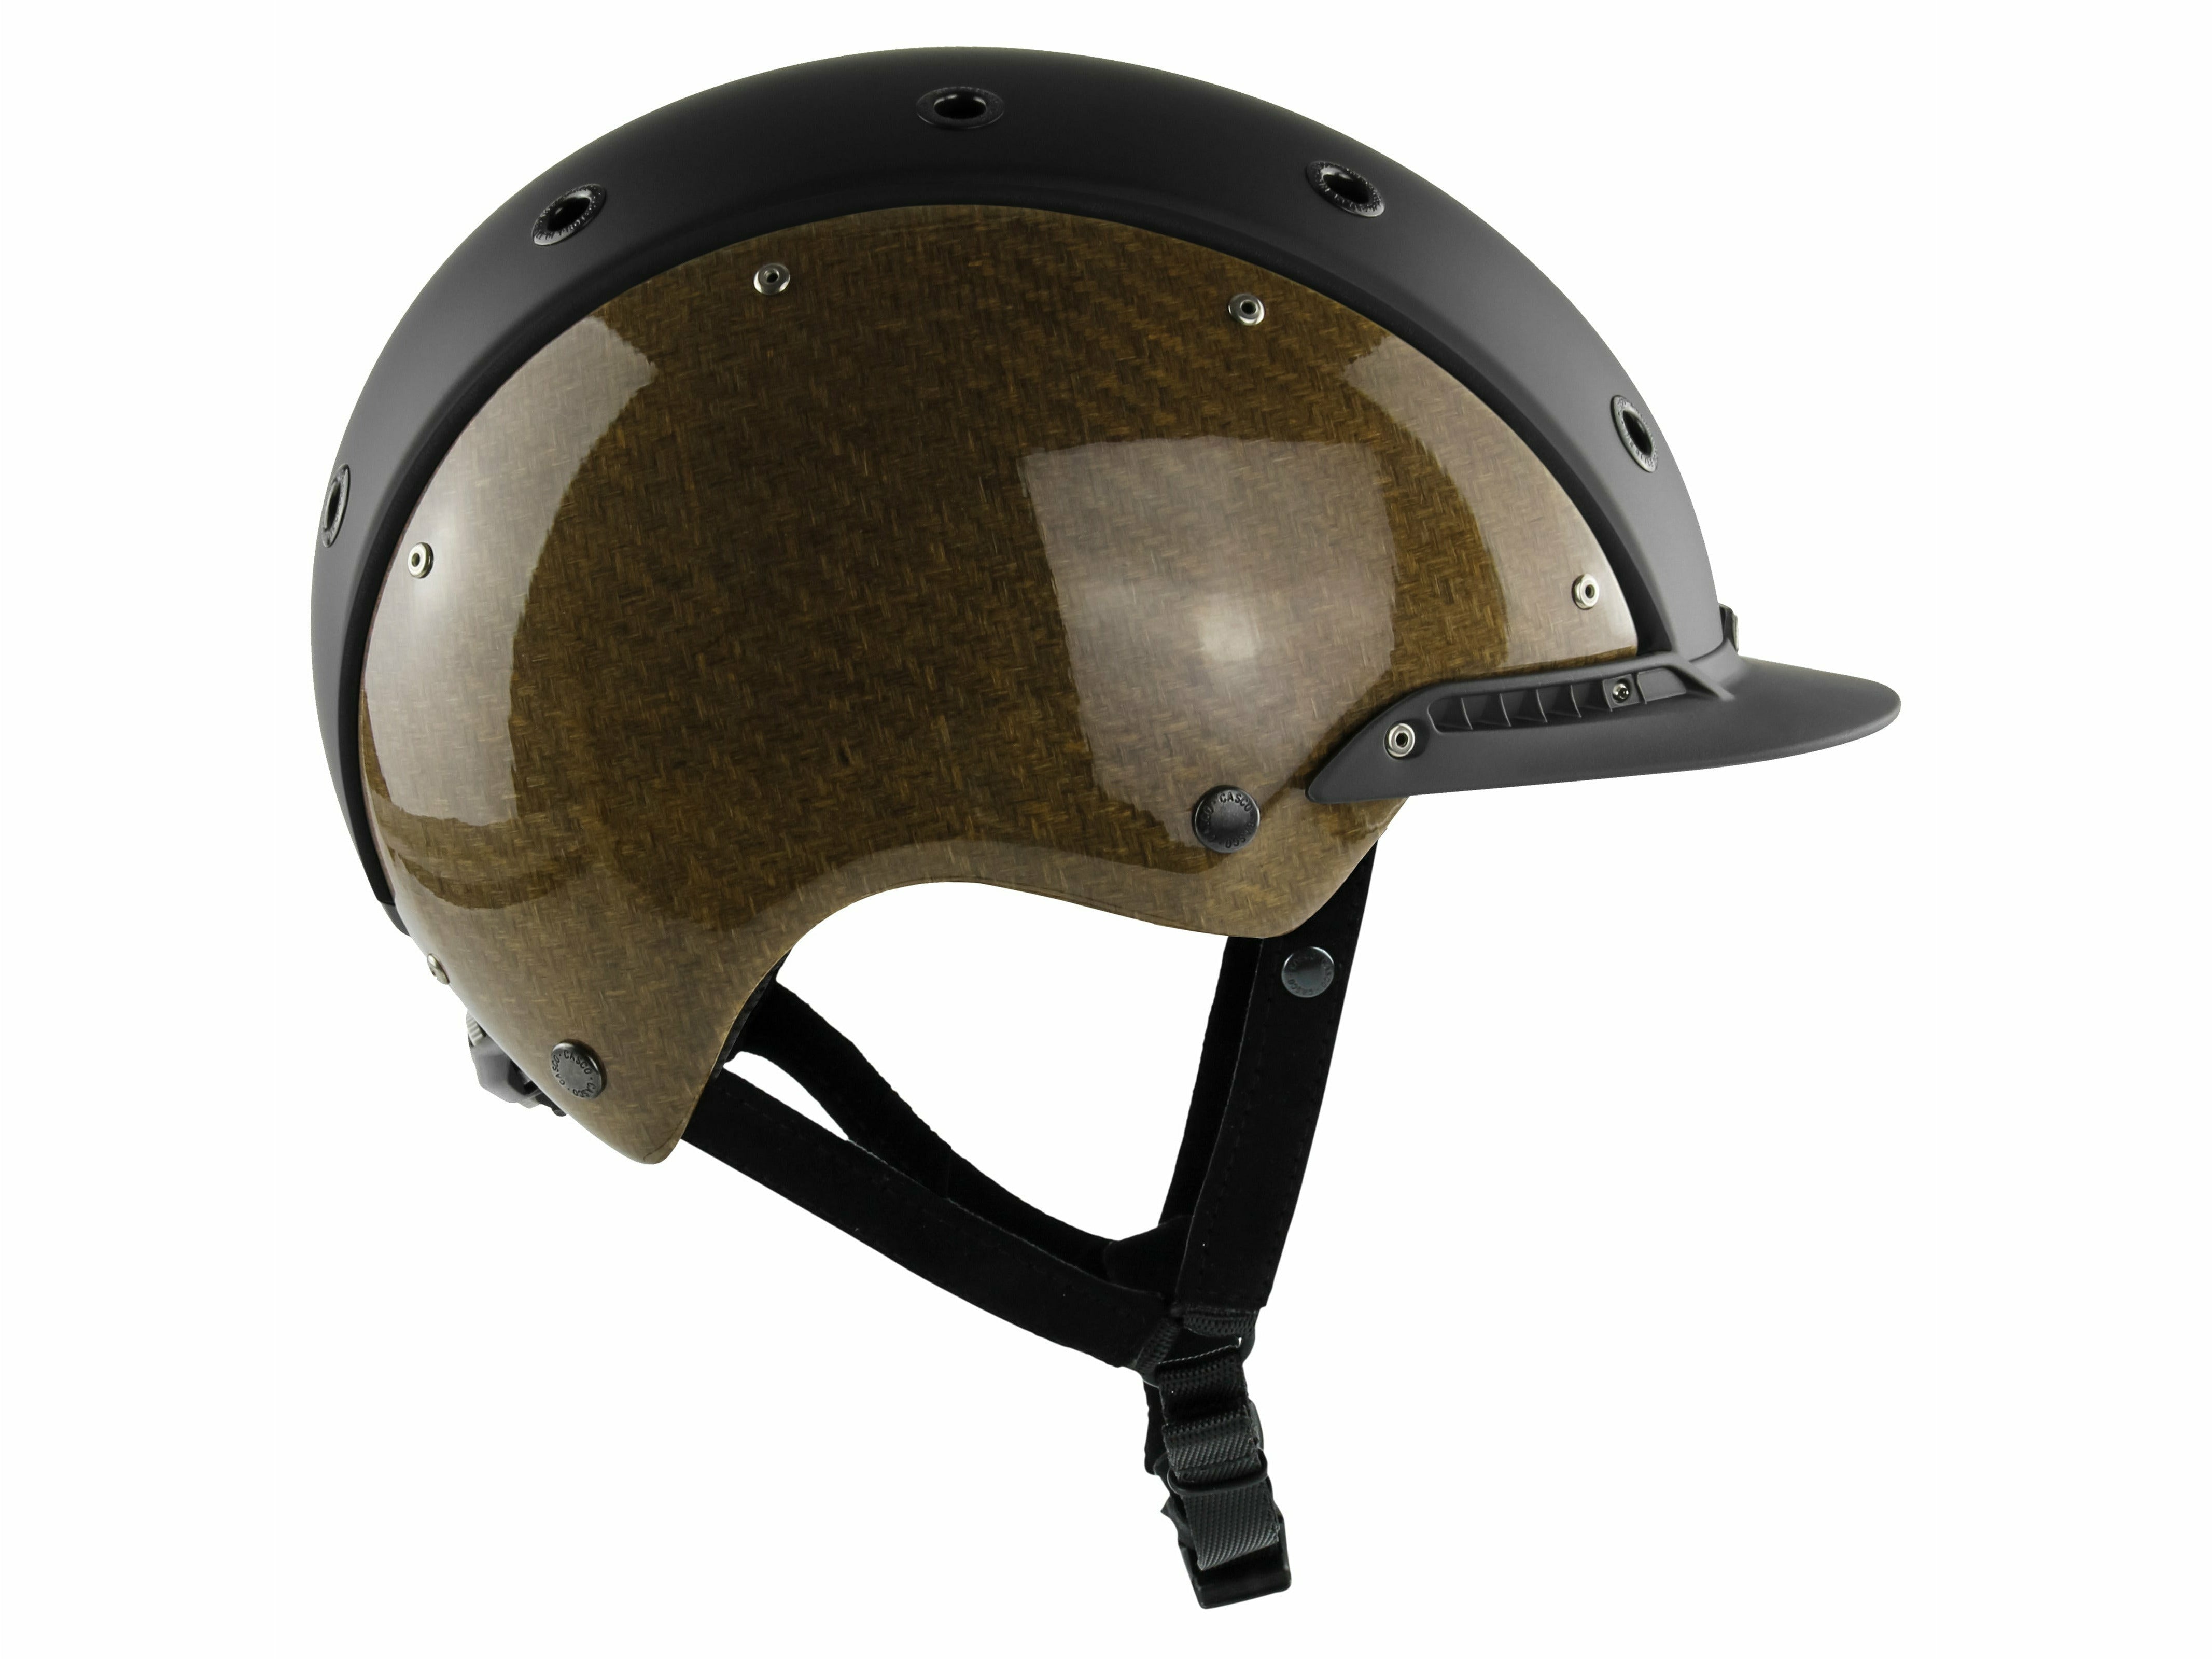 Natürlich nachwachsende Flachsfasern, schön sichtbar in den Composite-Außenschalen verarbeitet, geben diesem Helm seine besondere Ausstrahlung.